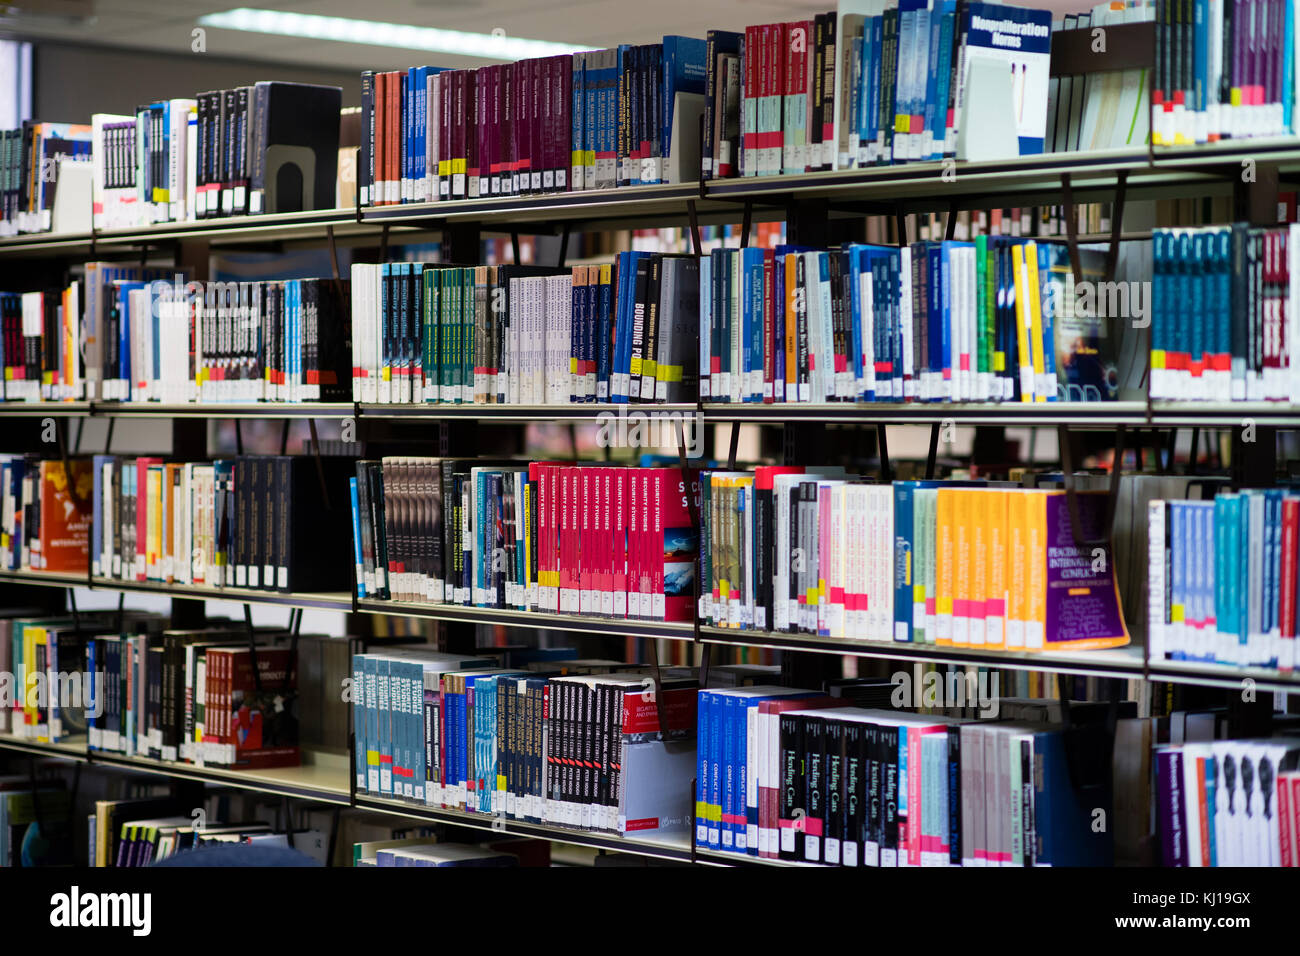 L'enseignement supérieur au Royaume-Uni : livres universitaires sur les étagères dans une bibliothèque de l'University College, uk Banque D'Images